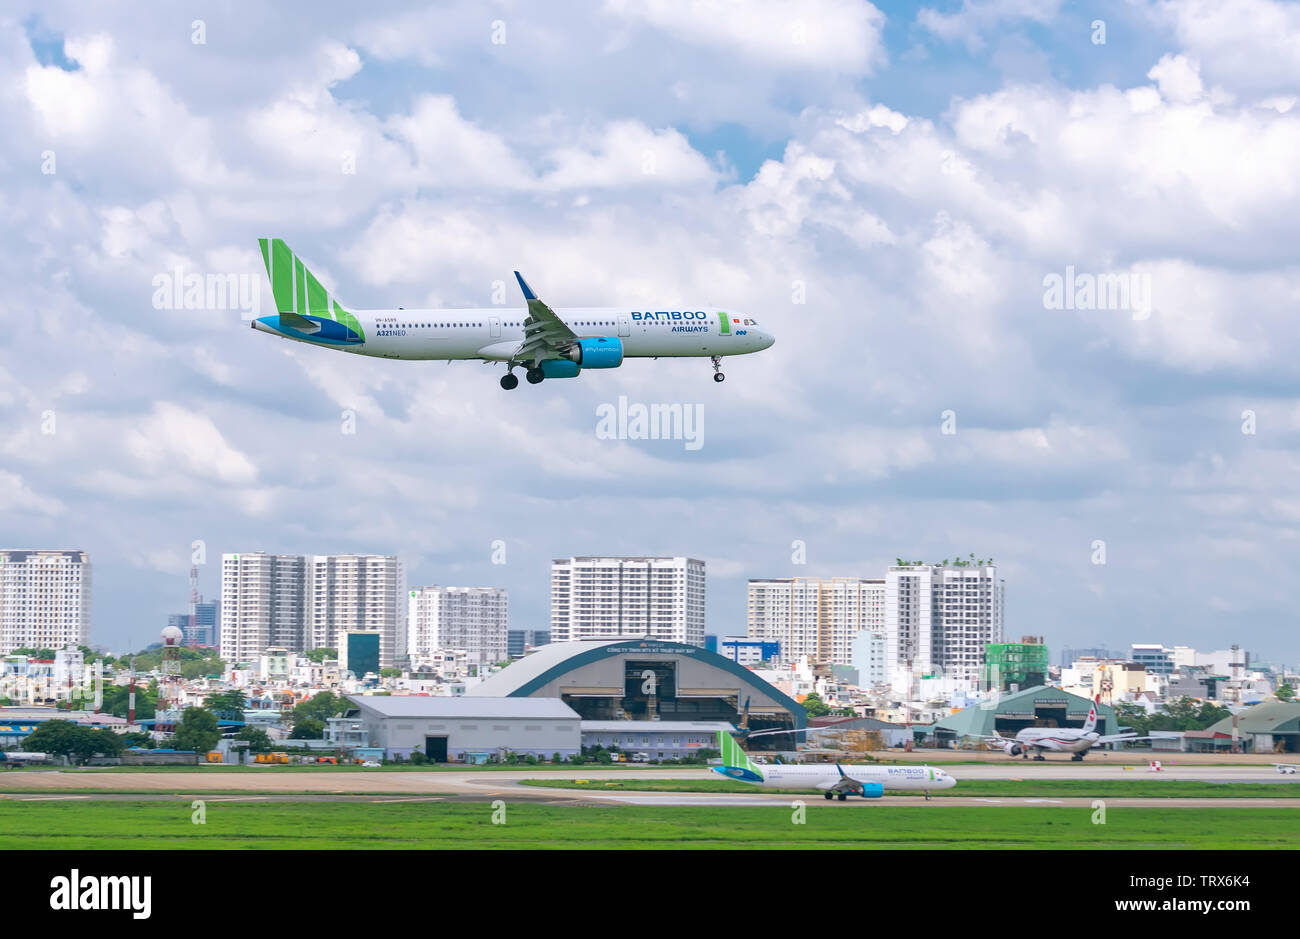 Aeroplano Airbus A321 neo Bamboo Airways volare attraverso le nuvole del cielo per preparare l'atterraggio all'Aeroporto Internazionale Tan Son Nhat di Ho Chi Minh City, Vietnam Foto Stock